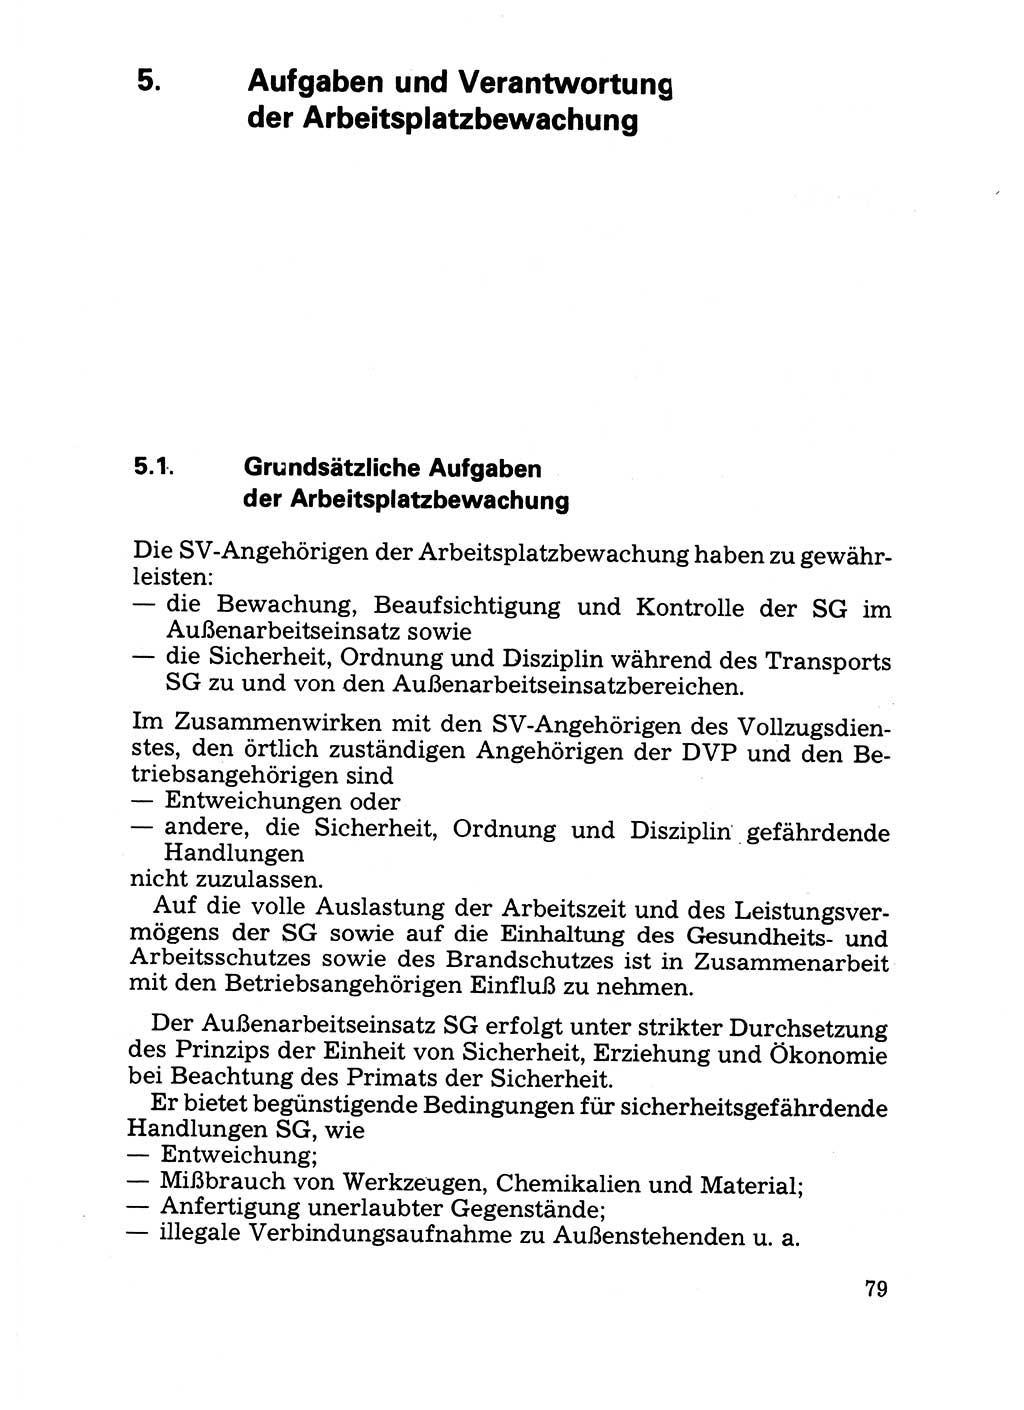 Handbuch für operative Dienste, Abteilung Strafvollzug (SV) [Ministerium des Innern (MdI) Deutsche Demokratische Republik (DDR)] 1981, Seite 79 (Hb. op. D. Abt. SV MdI DDR 1981, S. 79)